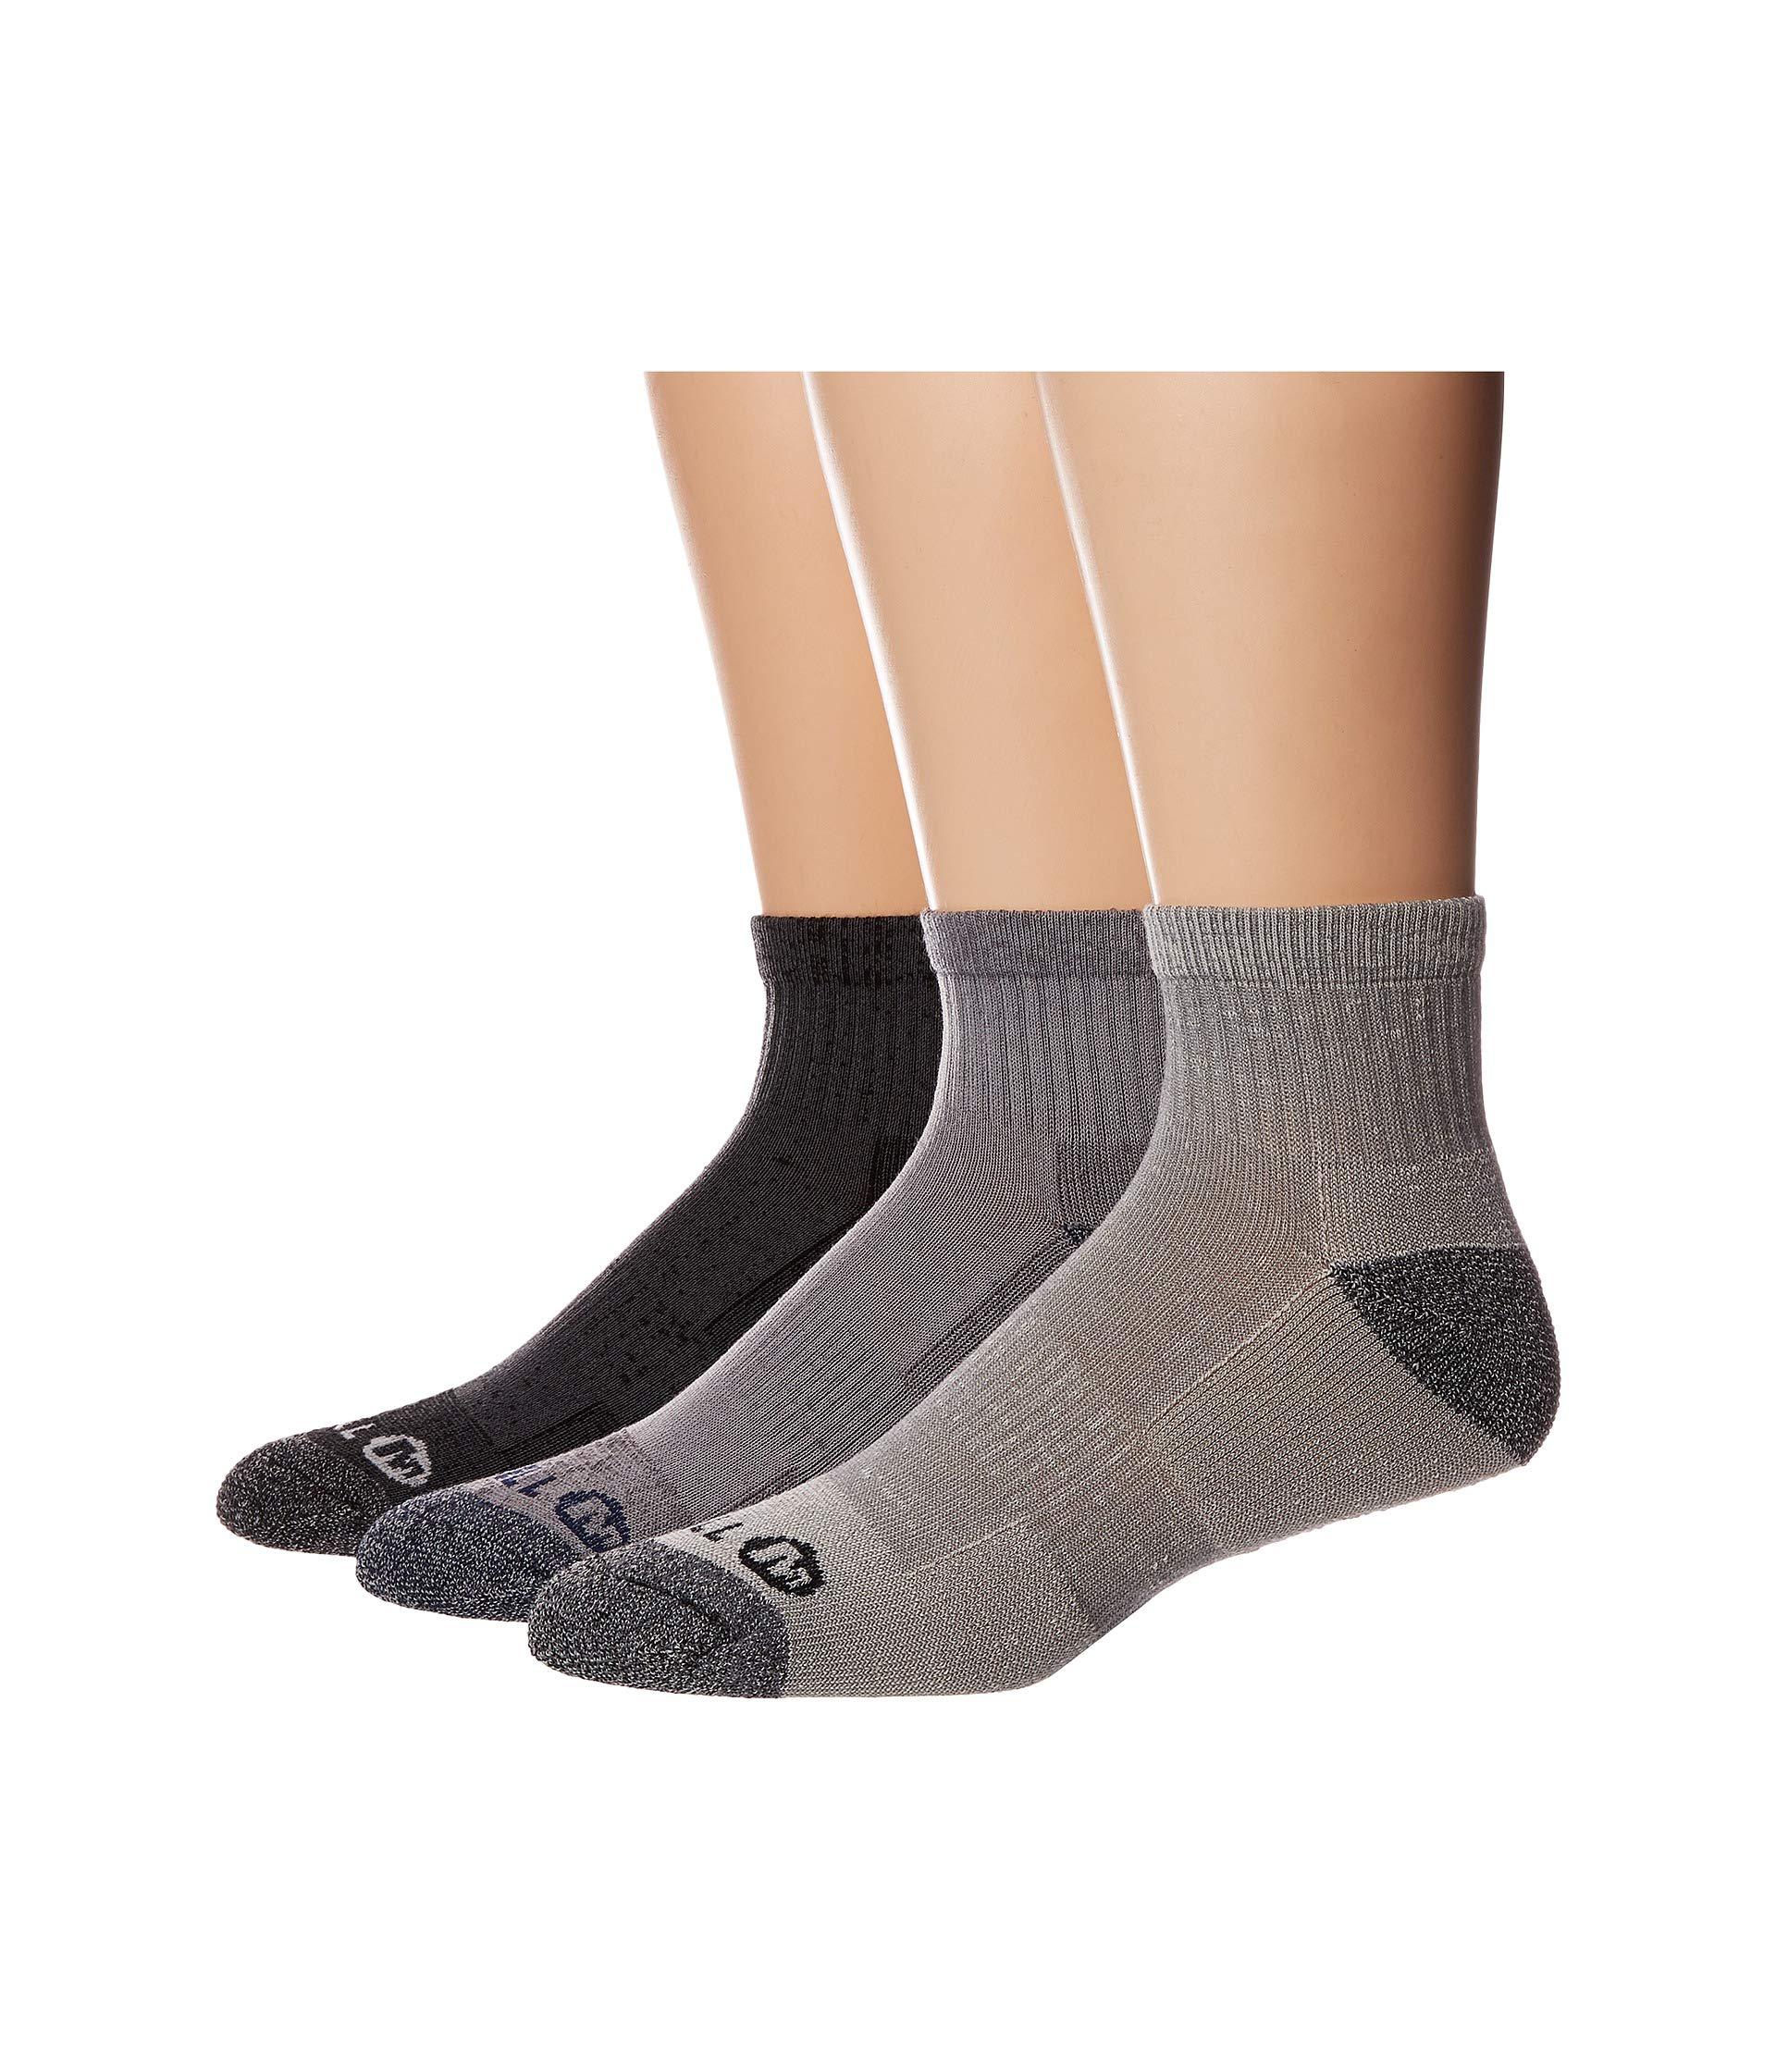 Merrell Hiking Socks Pack Of 3 in Charcoal Black (Gray) for Men - Lyst